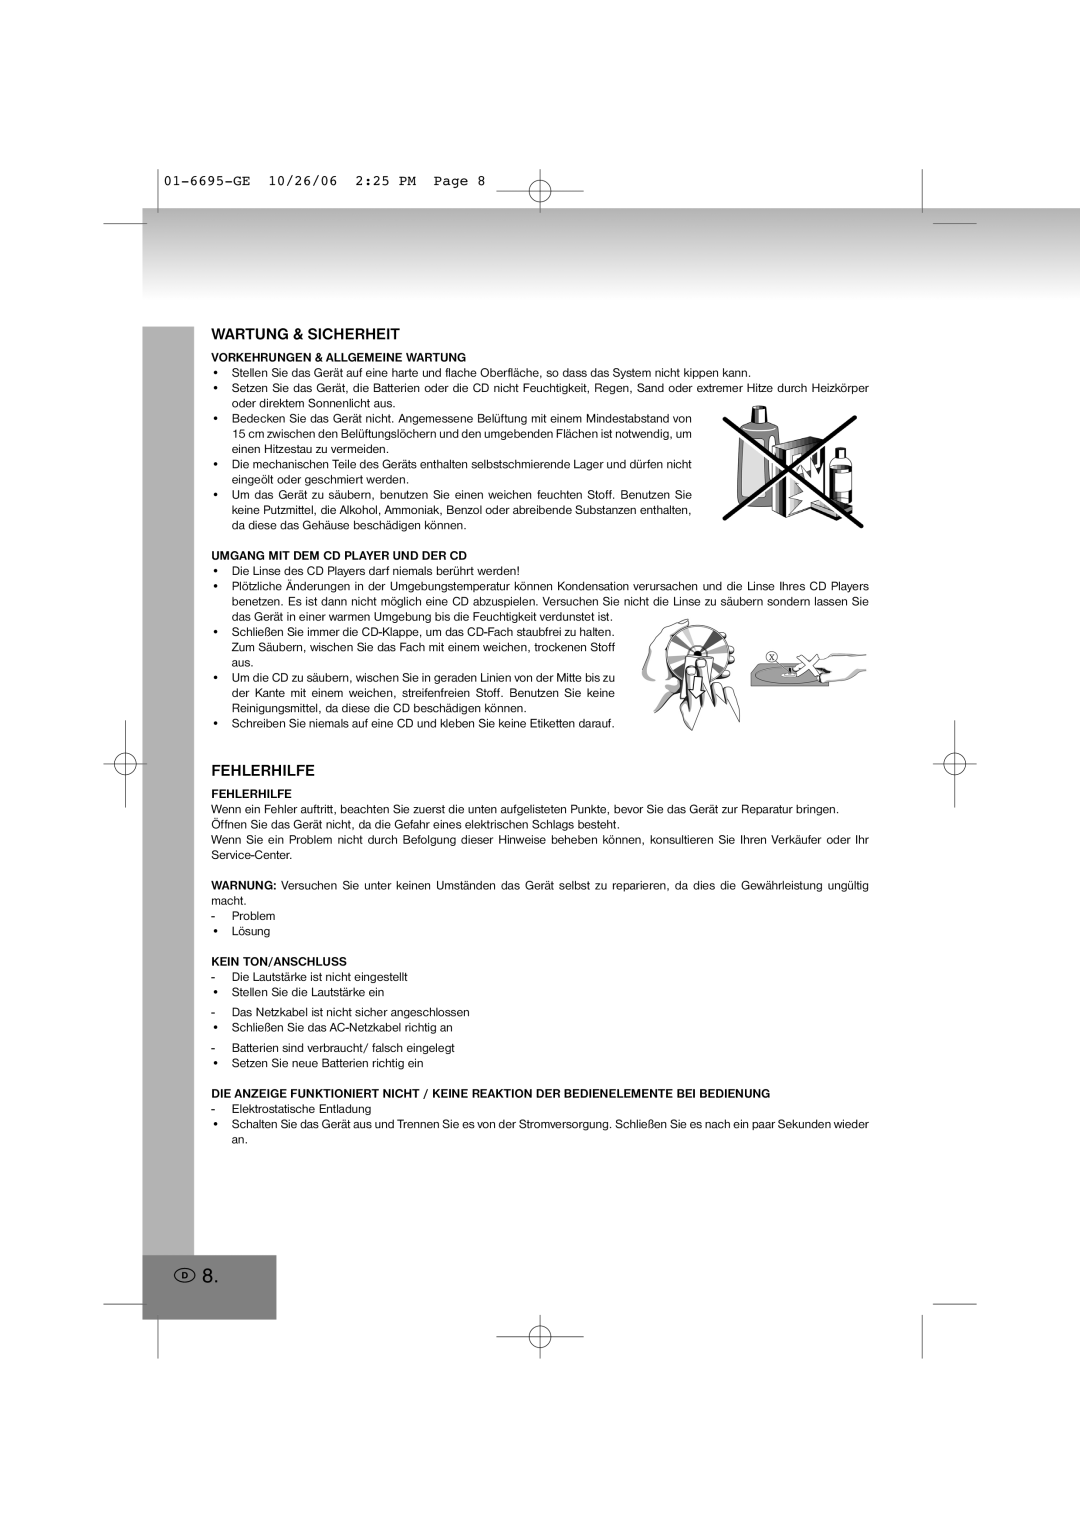 Elta manual Wartung & Sicherheit, Fehlerhilfe, 01-6695-GE10/26/06 2 25 PM Page 